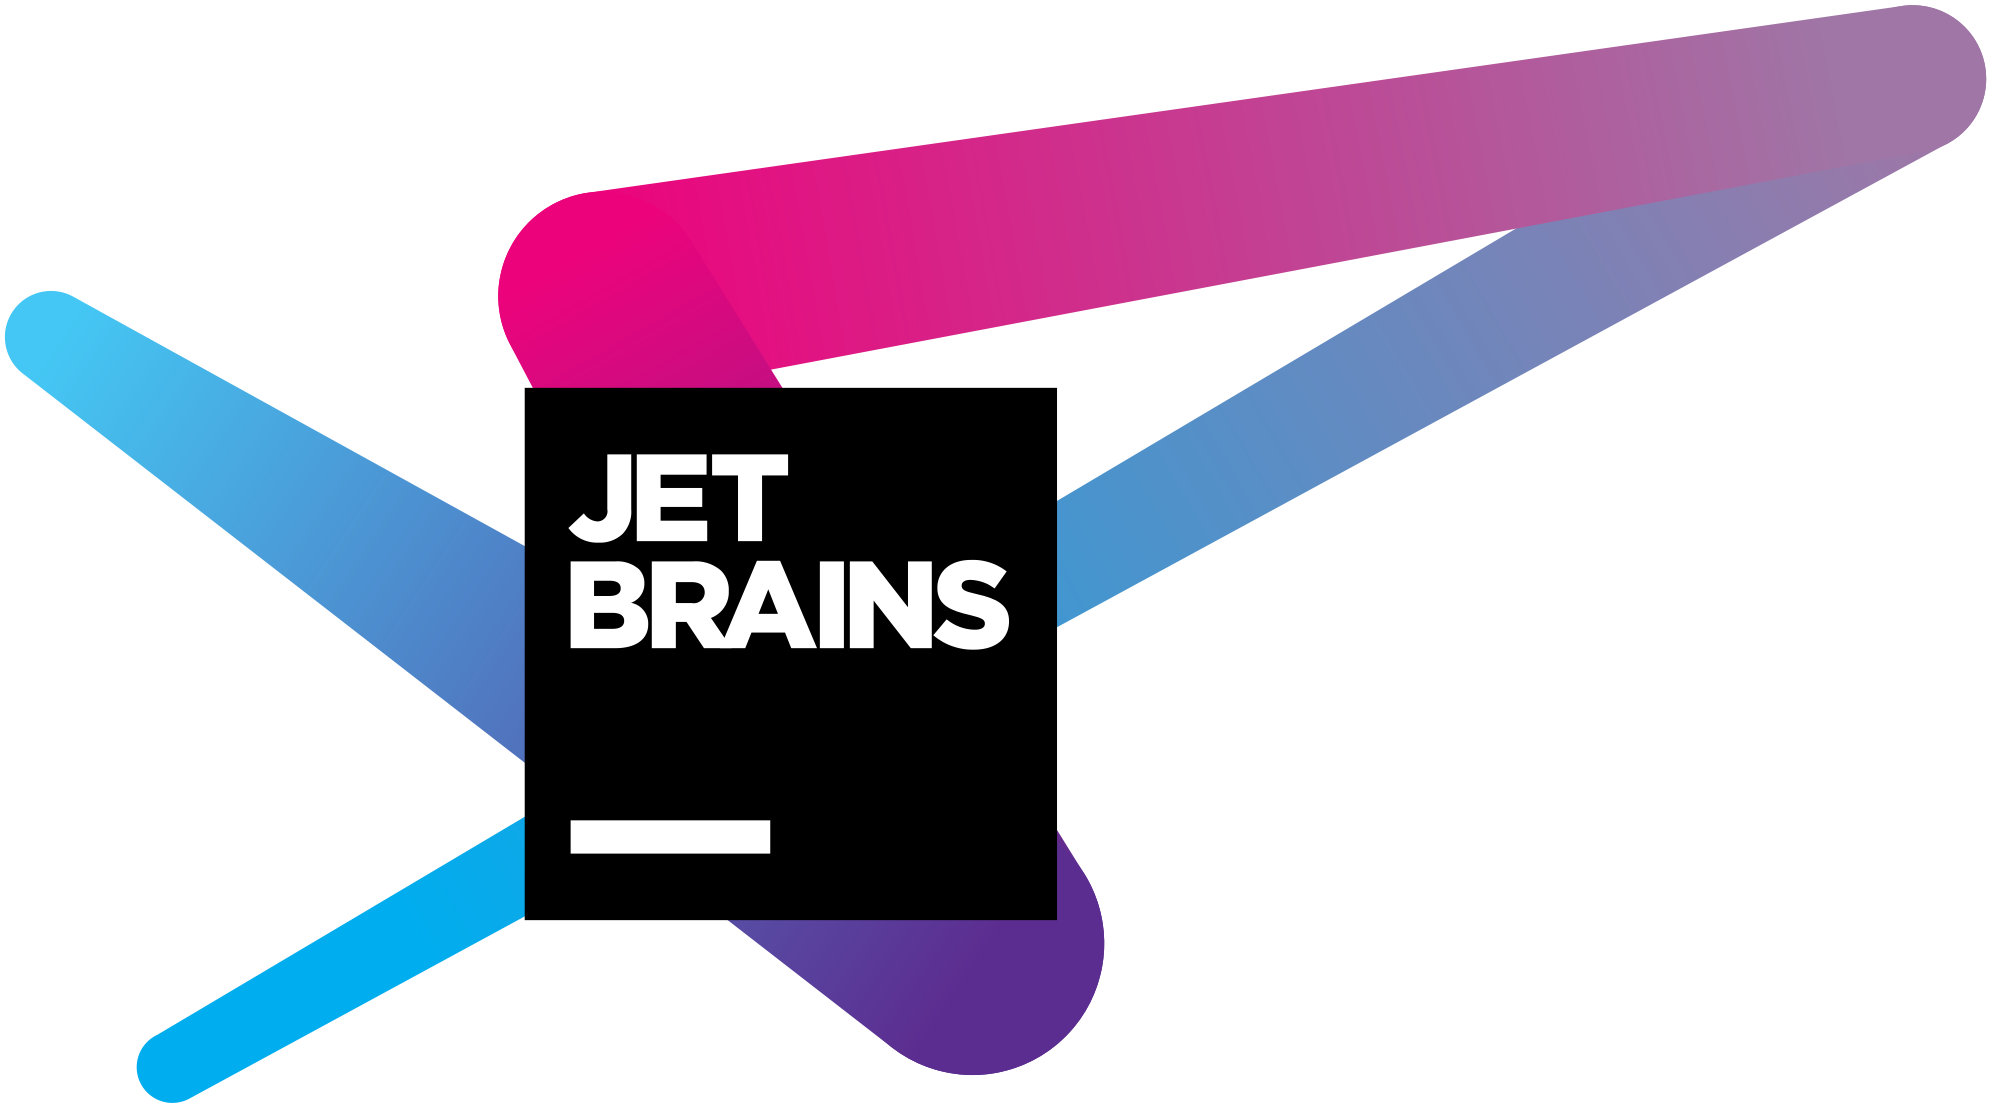 Скидка за непрерывное продление подписки на JetBrains IDE, продукты .NET, а также набор продуктов JetBrains All Products Pack